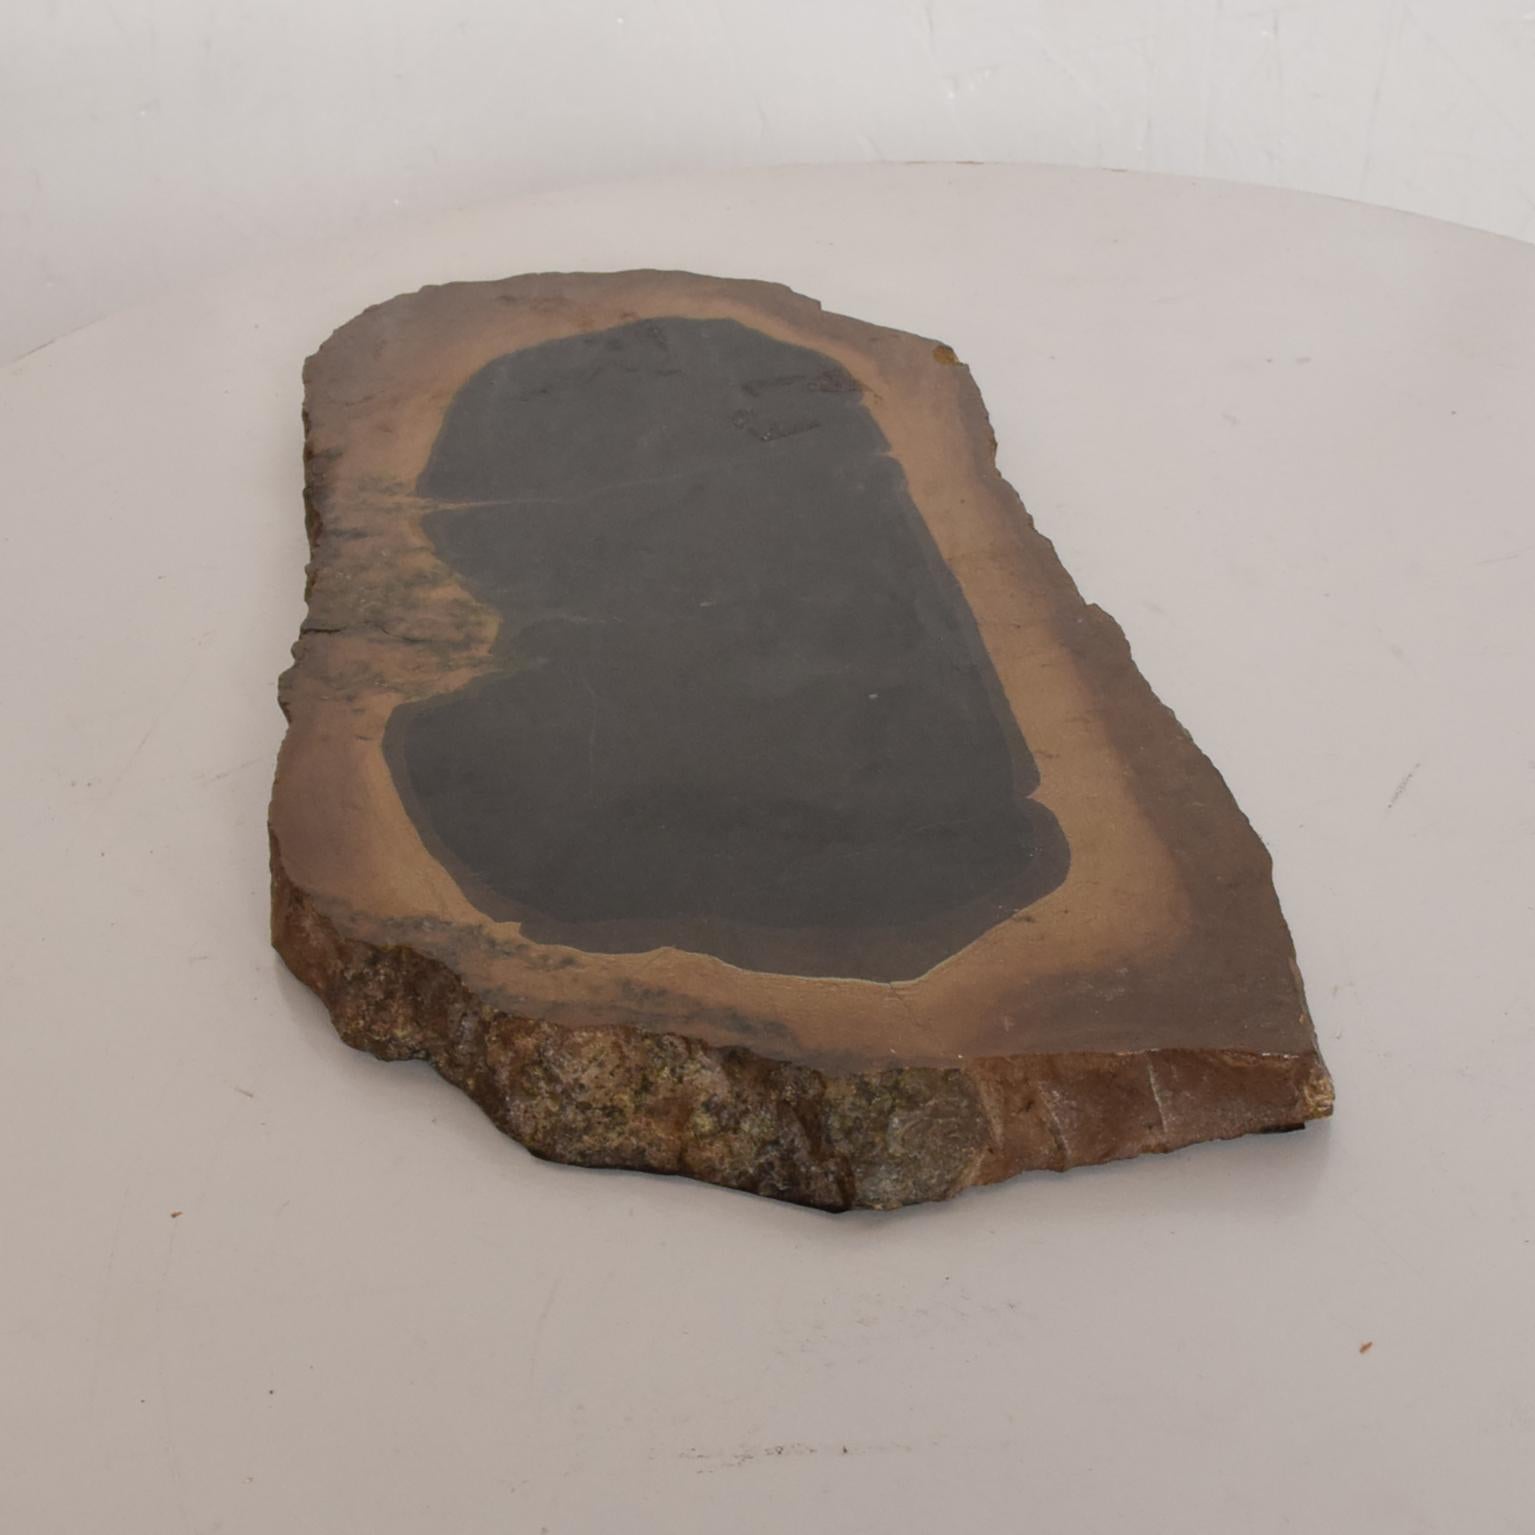 Naturstein
Sockel aus Naturstein aus Brasilien
Abmessungen: 12 L x 6 T x 0,75 dick.
Die Unterseite ist aus braunem Filz.
Original organischer Vintage-Zustand
Siehe Bilder